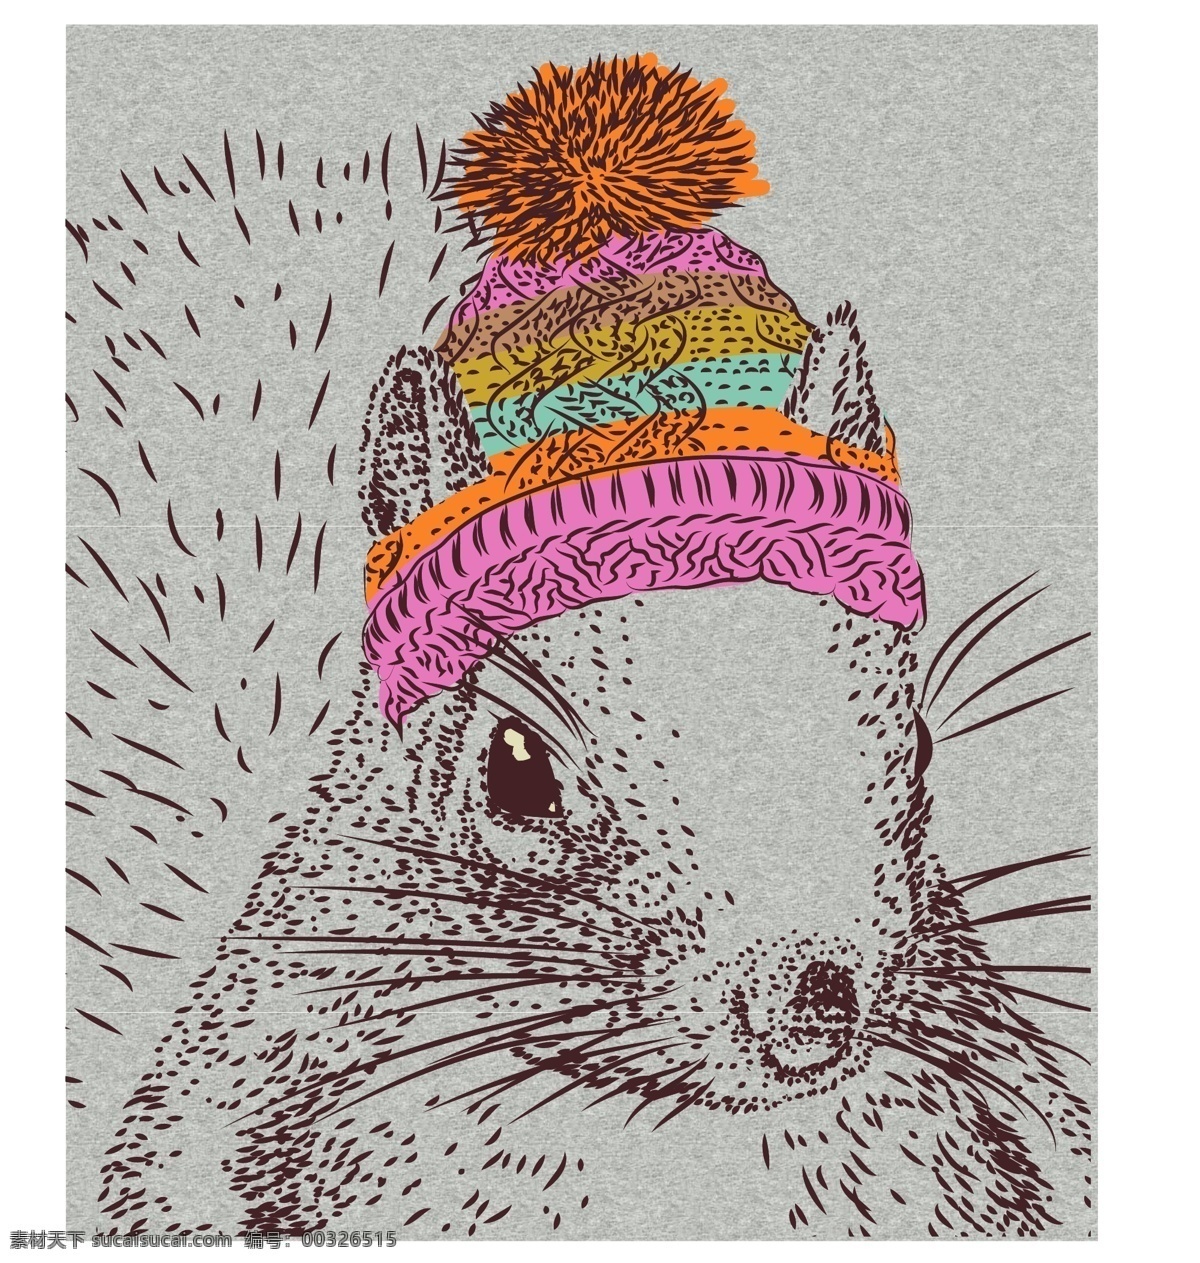 手绘 带 毛线帽 松鼠 手绘插画 手绘松鼠 可爱松鼠 动物 矢量素材 灰色